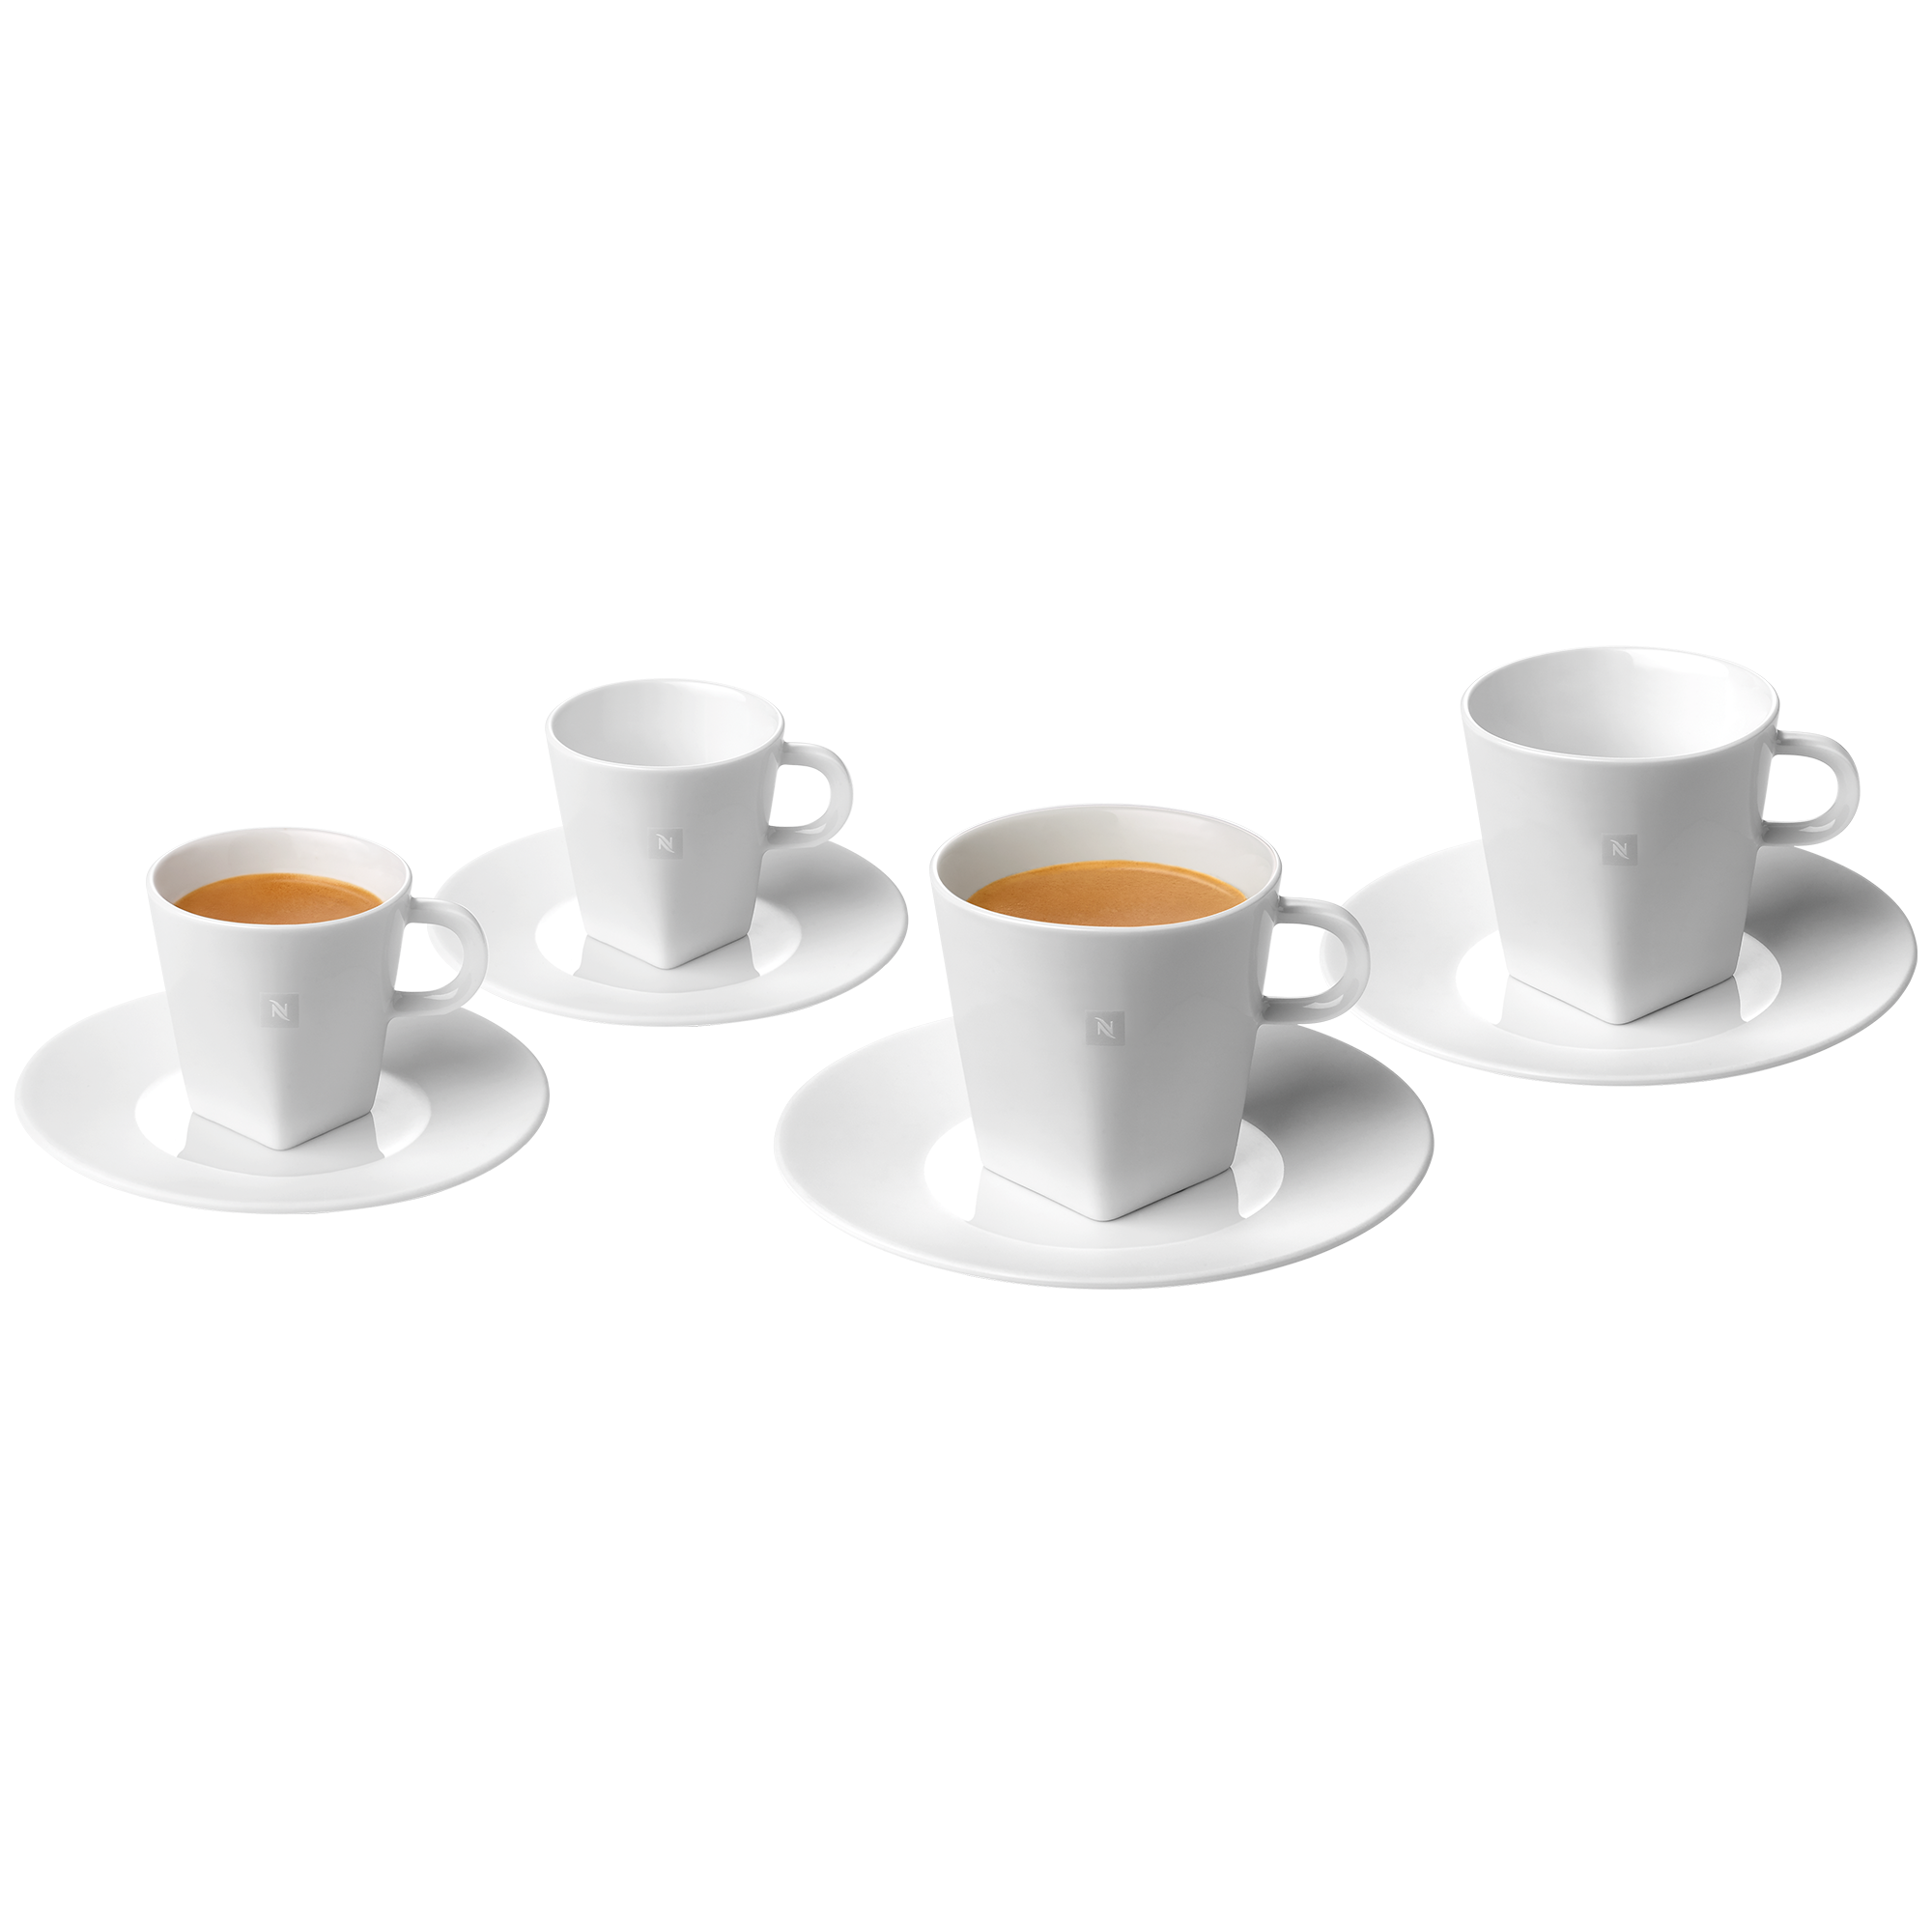 verzoek efficiëntie Wet en regelgeving Espresso & Lungo Cups Set | Coffee Cups | Nespresso Mexico